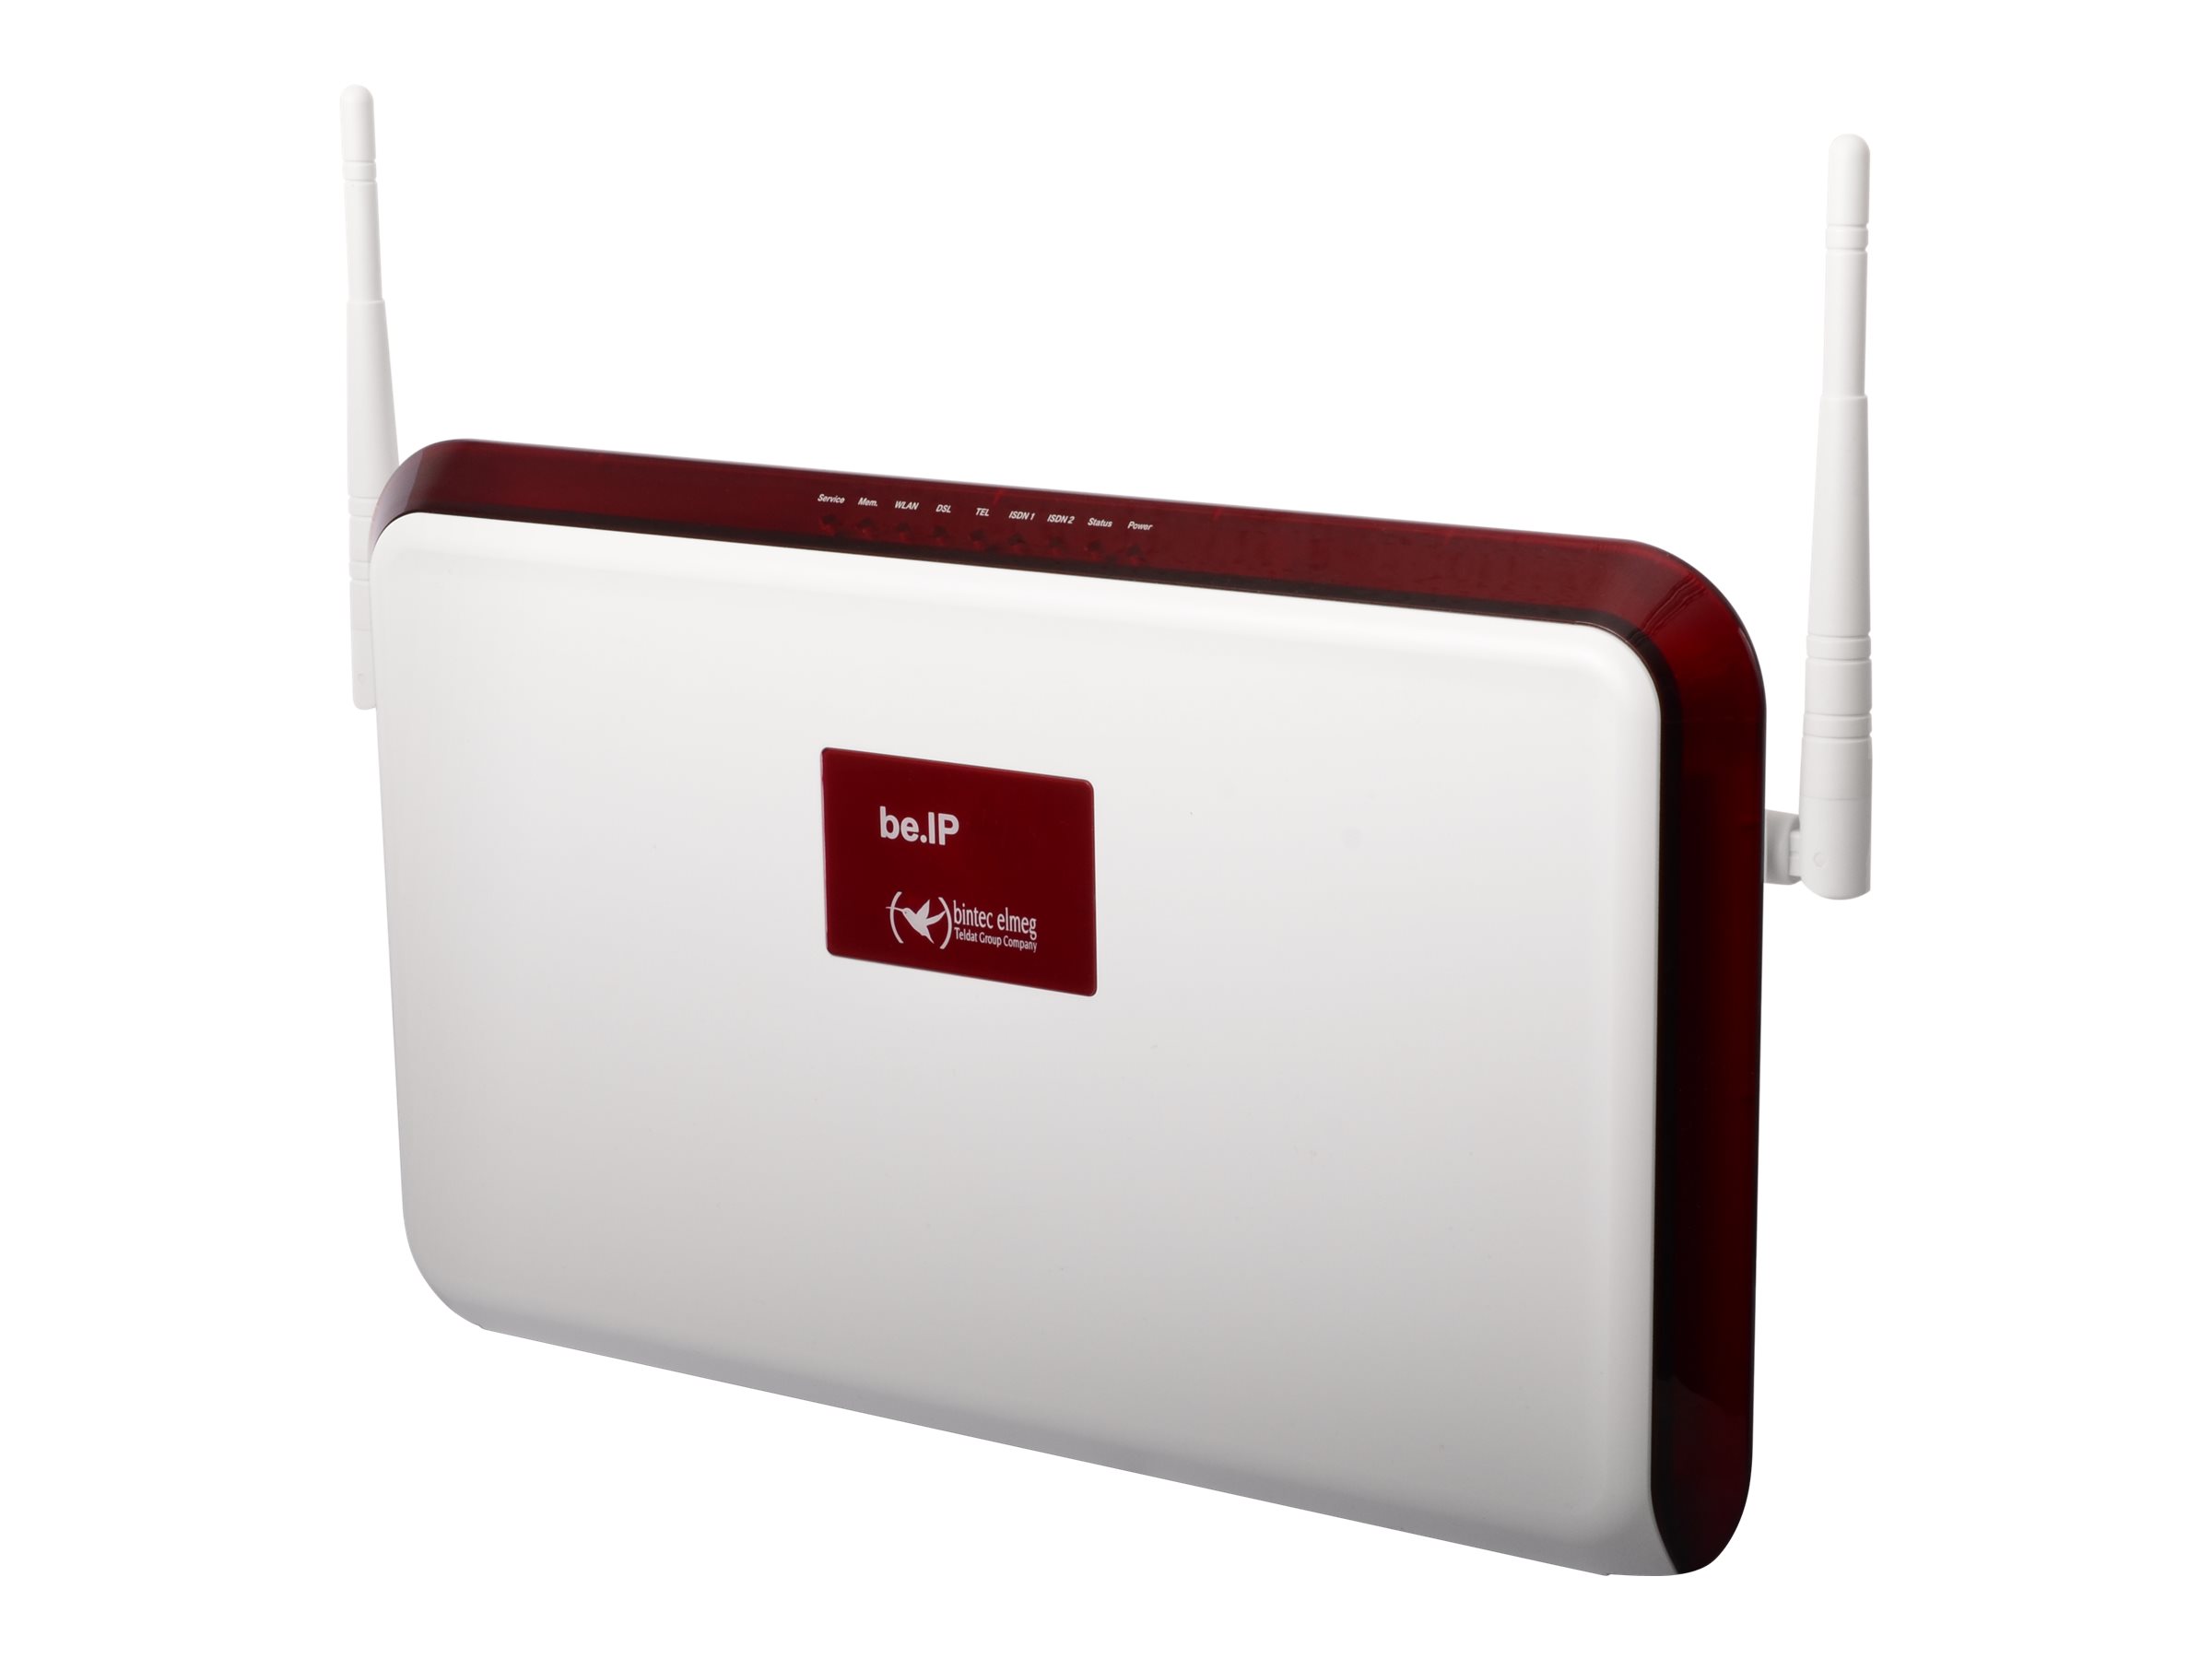 bintec elmeg be.IP - Wireless Router - DSL-Modem - GigE, PPP, MLPPP - WAN-Ports: 4 - Wi-Fi